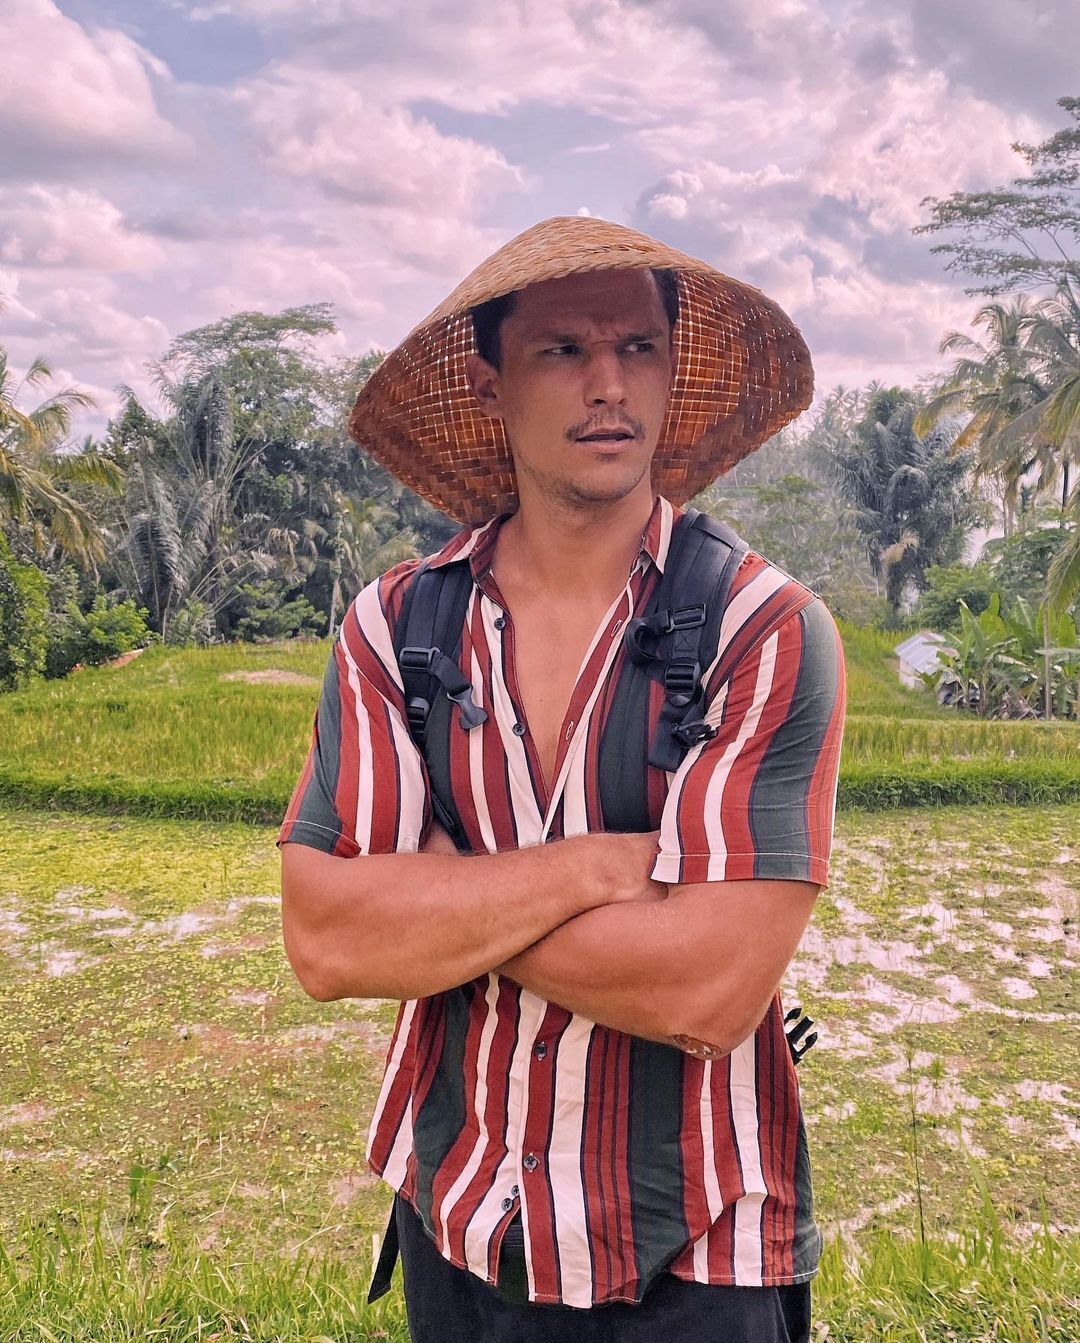 Цимбалюк побывал на Бали и объяснил, чем отдых особенный. Фото